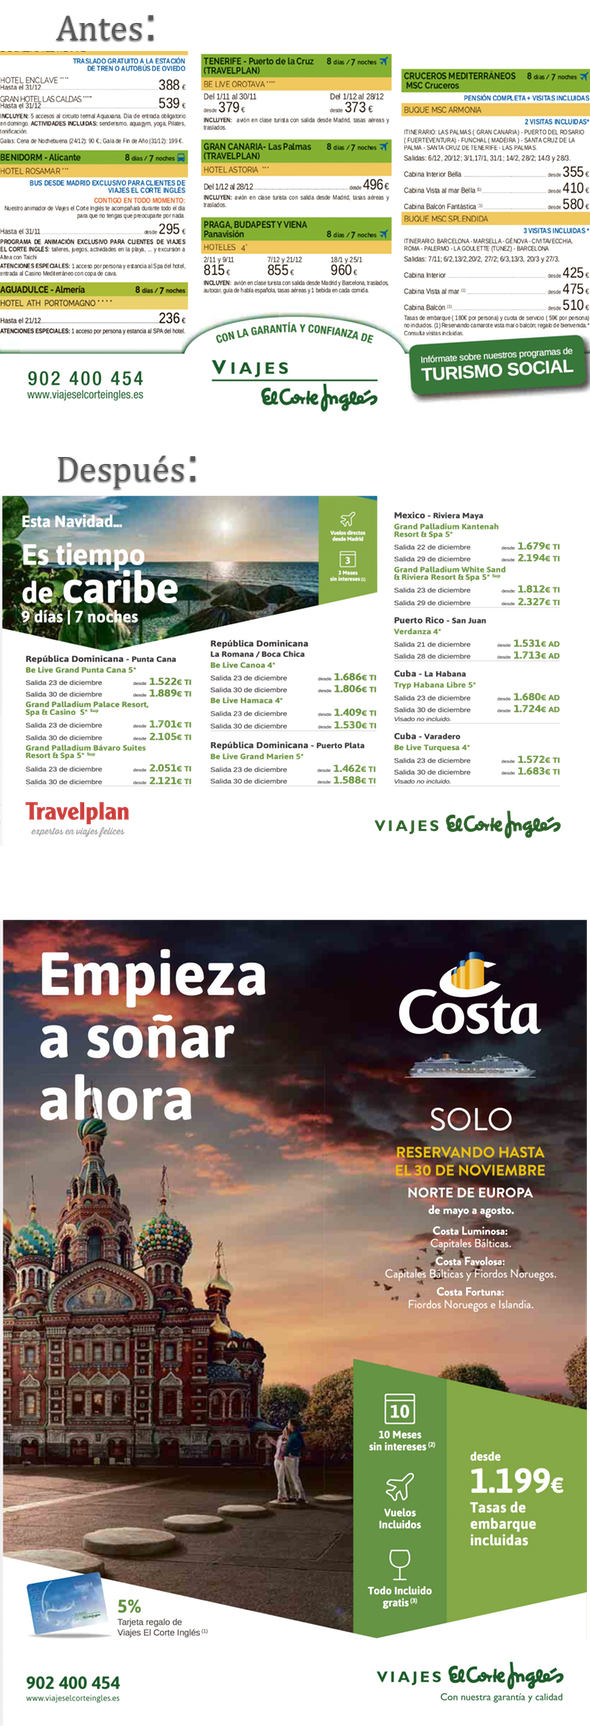 FOTONOTICIA: Viajes El Corte Inglés moderniza la estética de sus anuncios |  Noticias de Agencias de viajes, rss2 | Revista de turismo Preferente.com